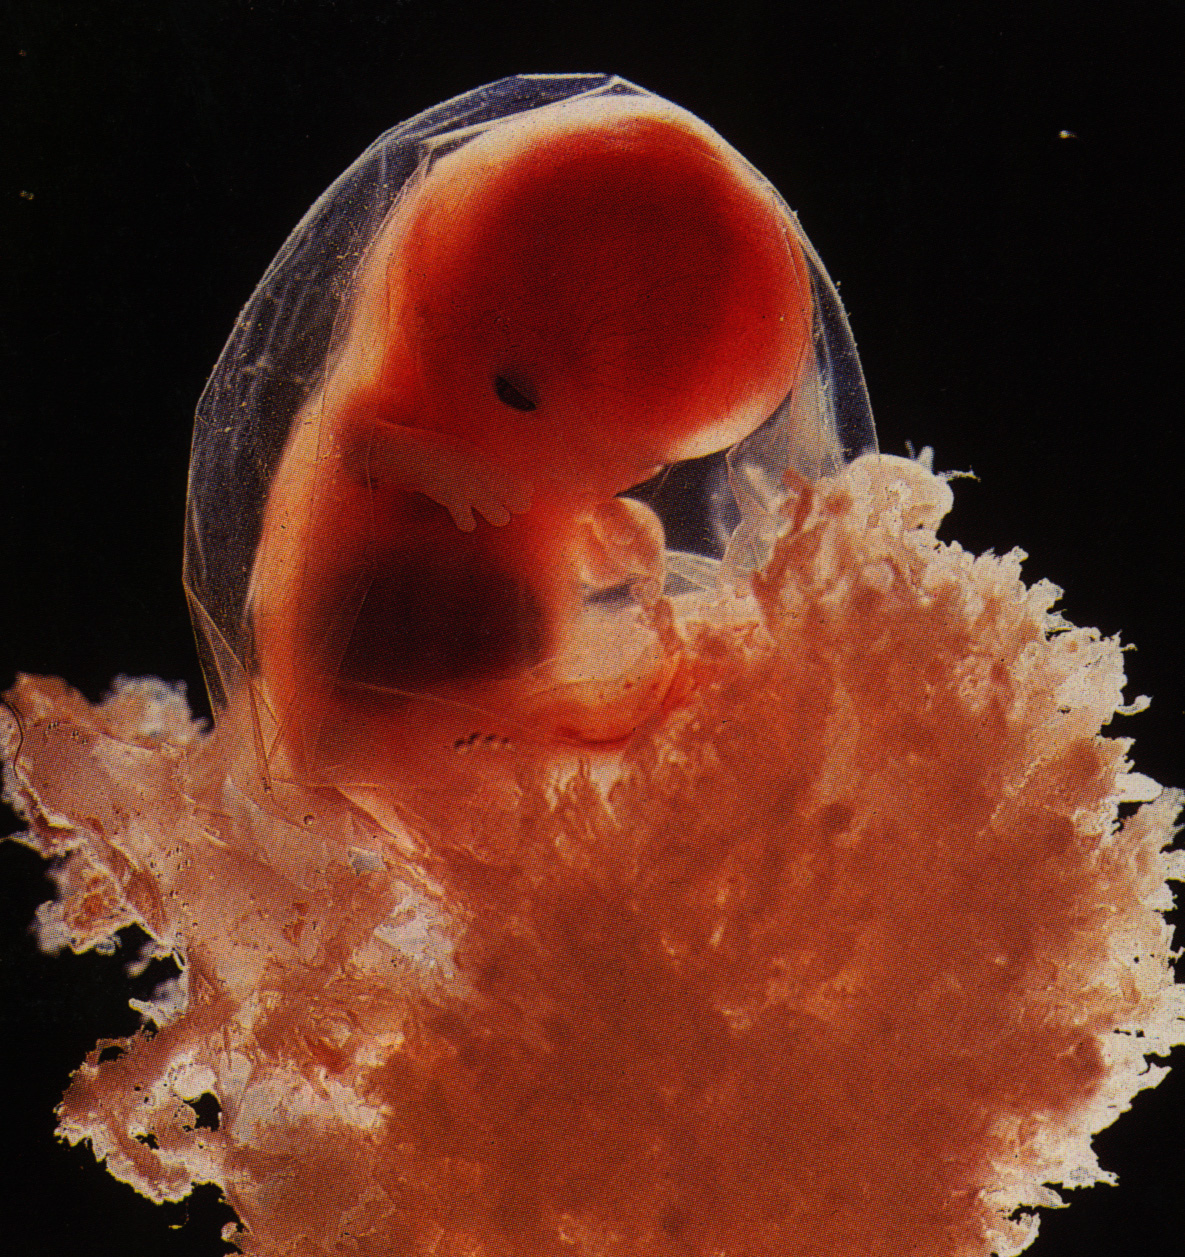 Эмбрион на какой неделе. Эмбрион на 4 эмбриональной неделе беременности. Зародыш 3-4 недели беременности. Юбрион в 4 недели беременности.